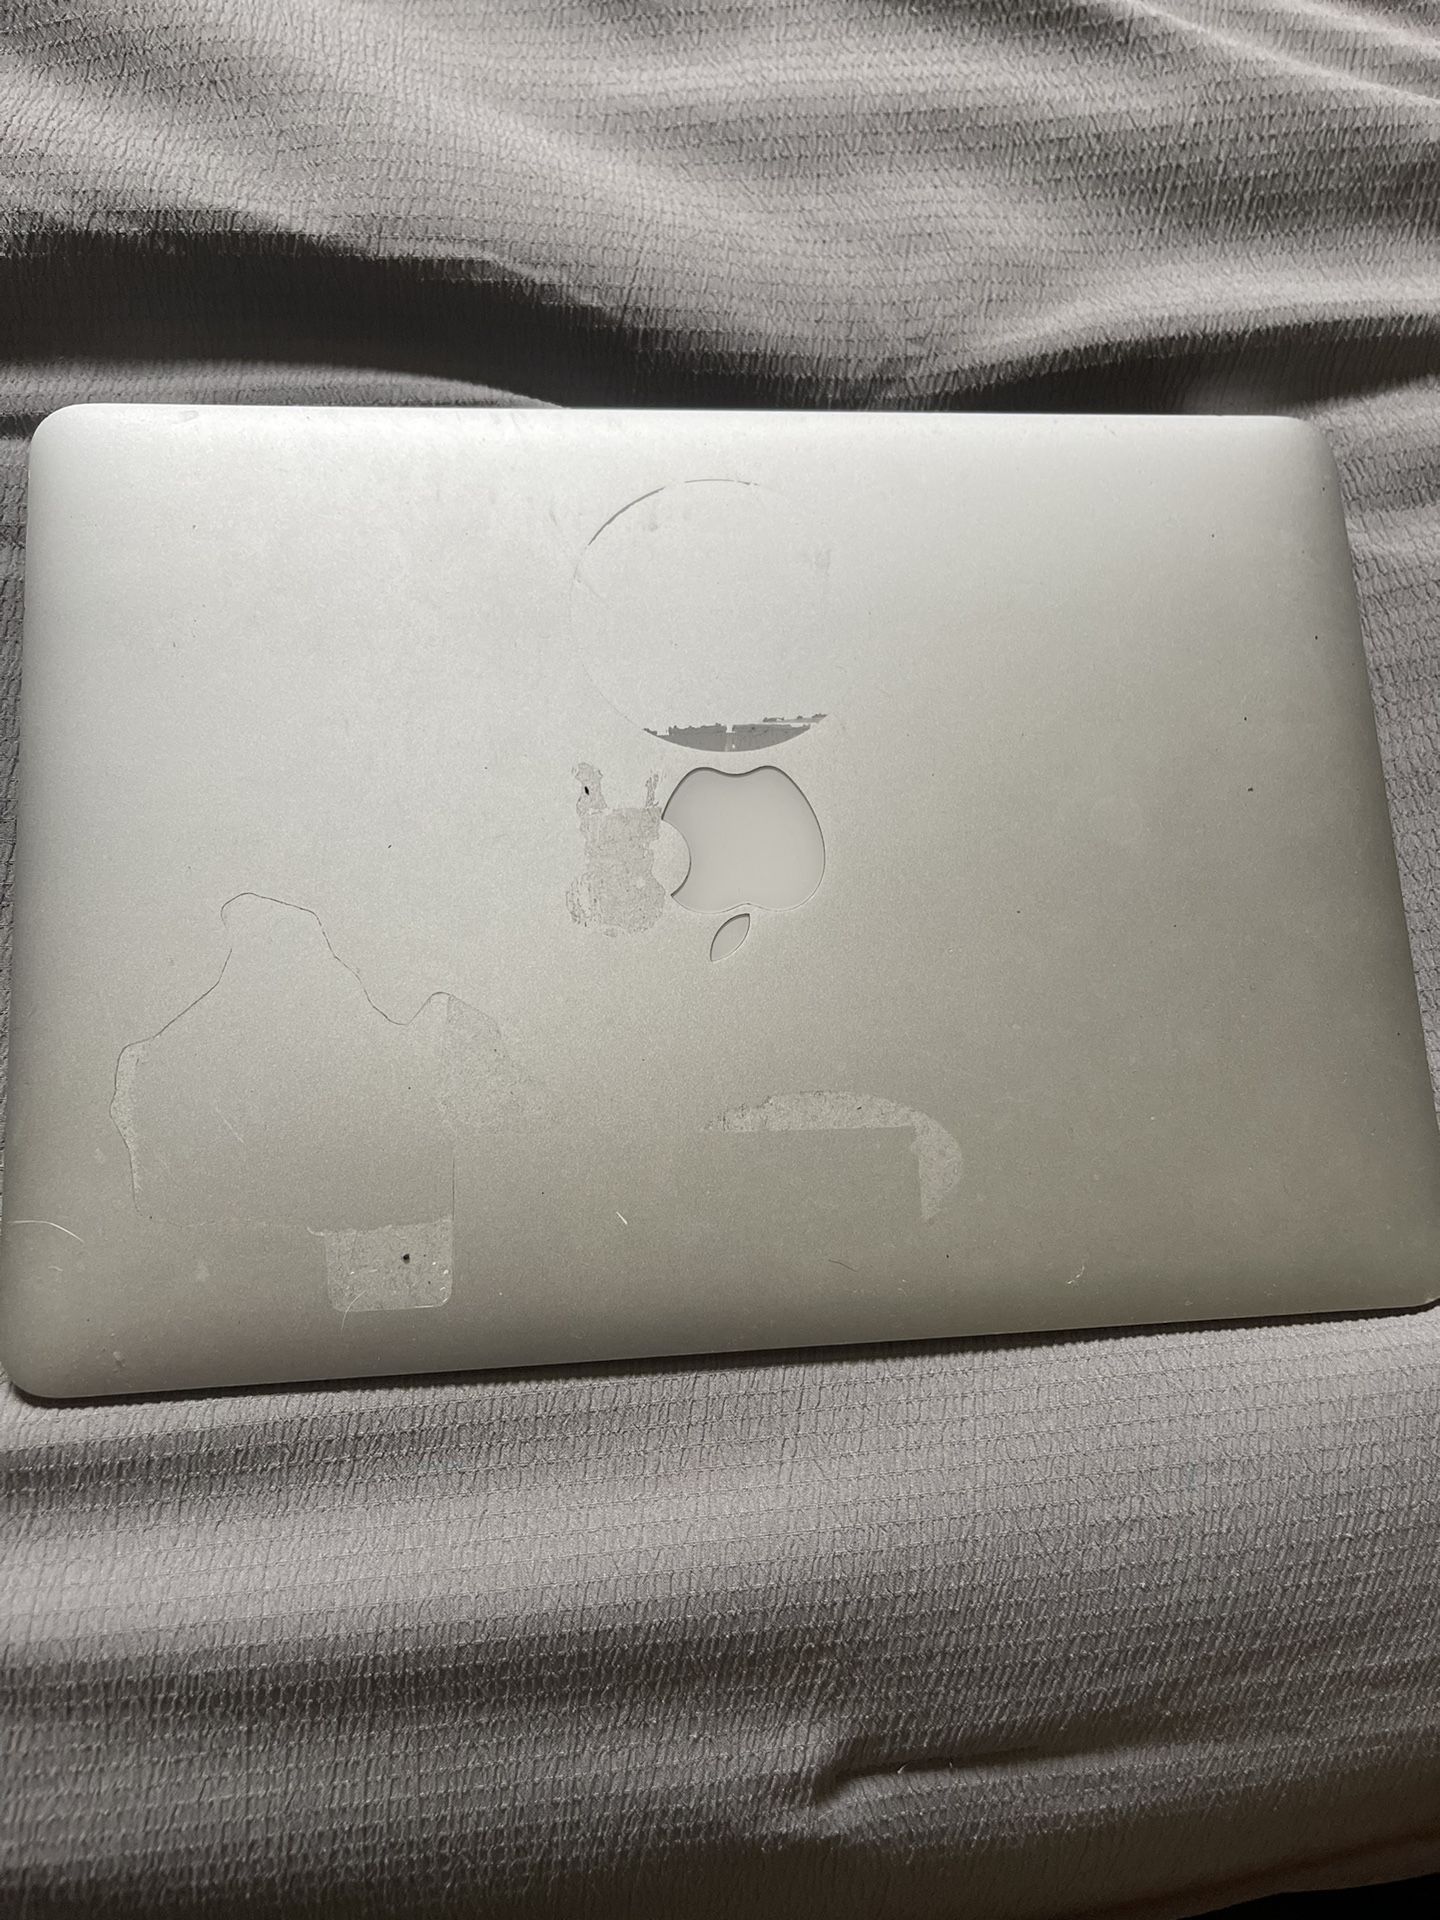 2017 MacBook Air 